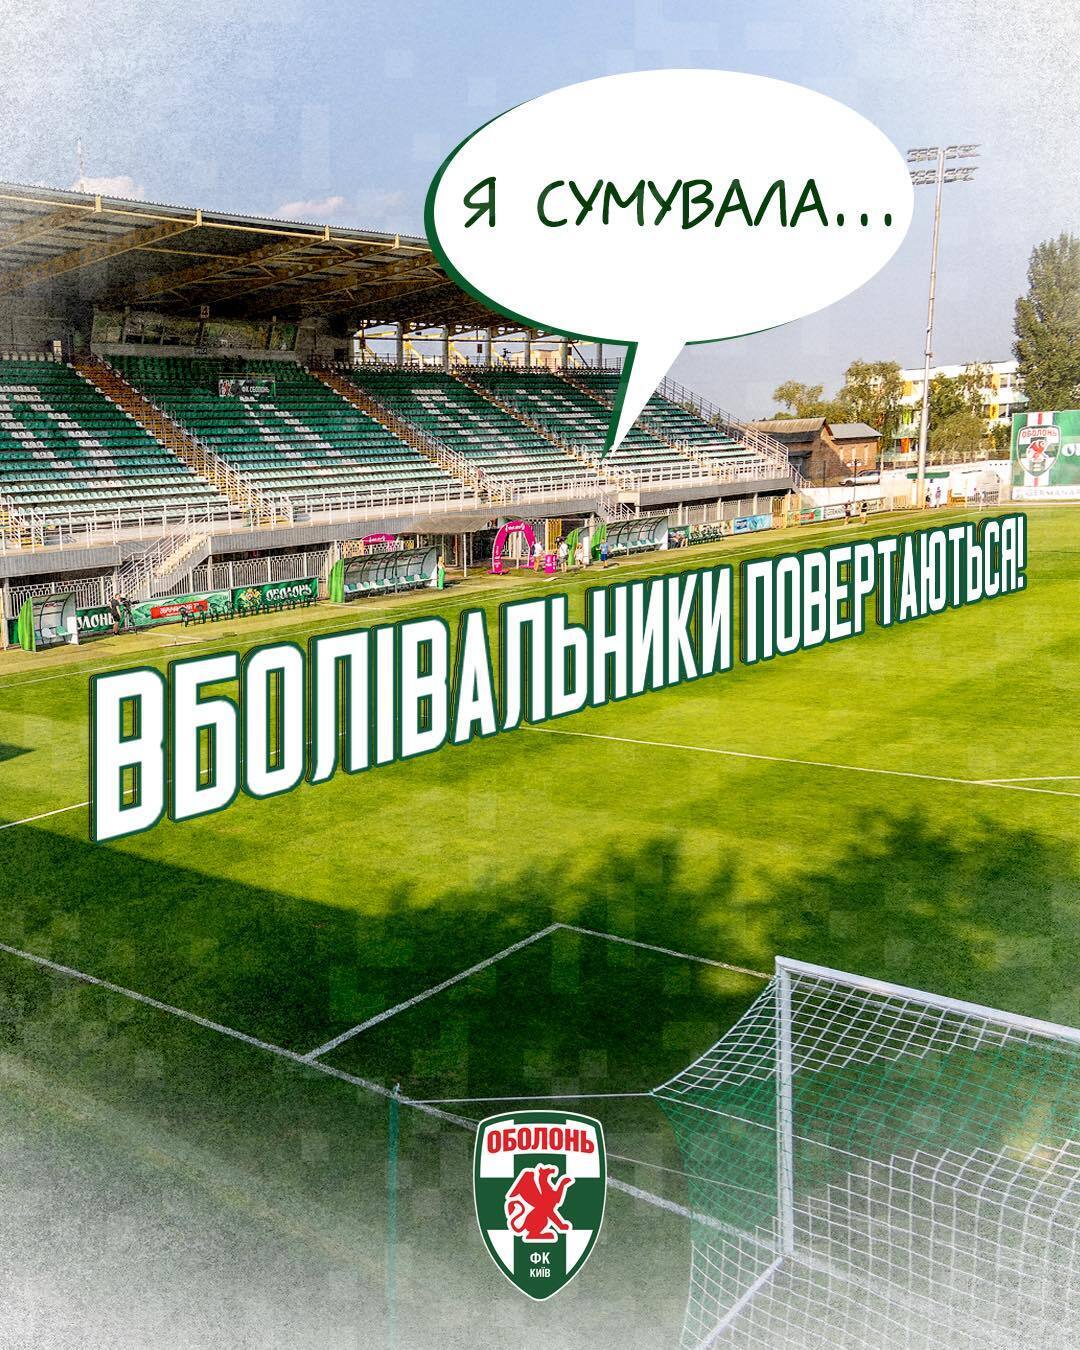 Первая игра 26 февраля: киевский футбольный клуб возвращает зрителей на матчи